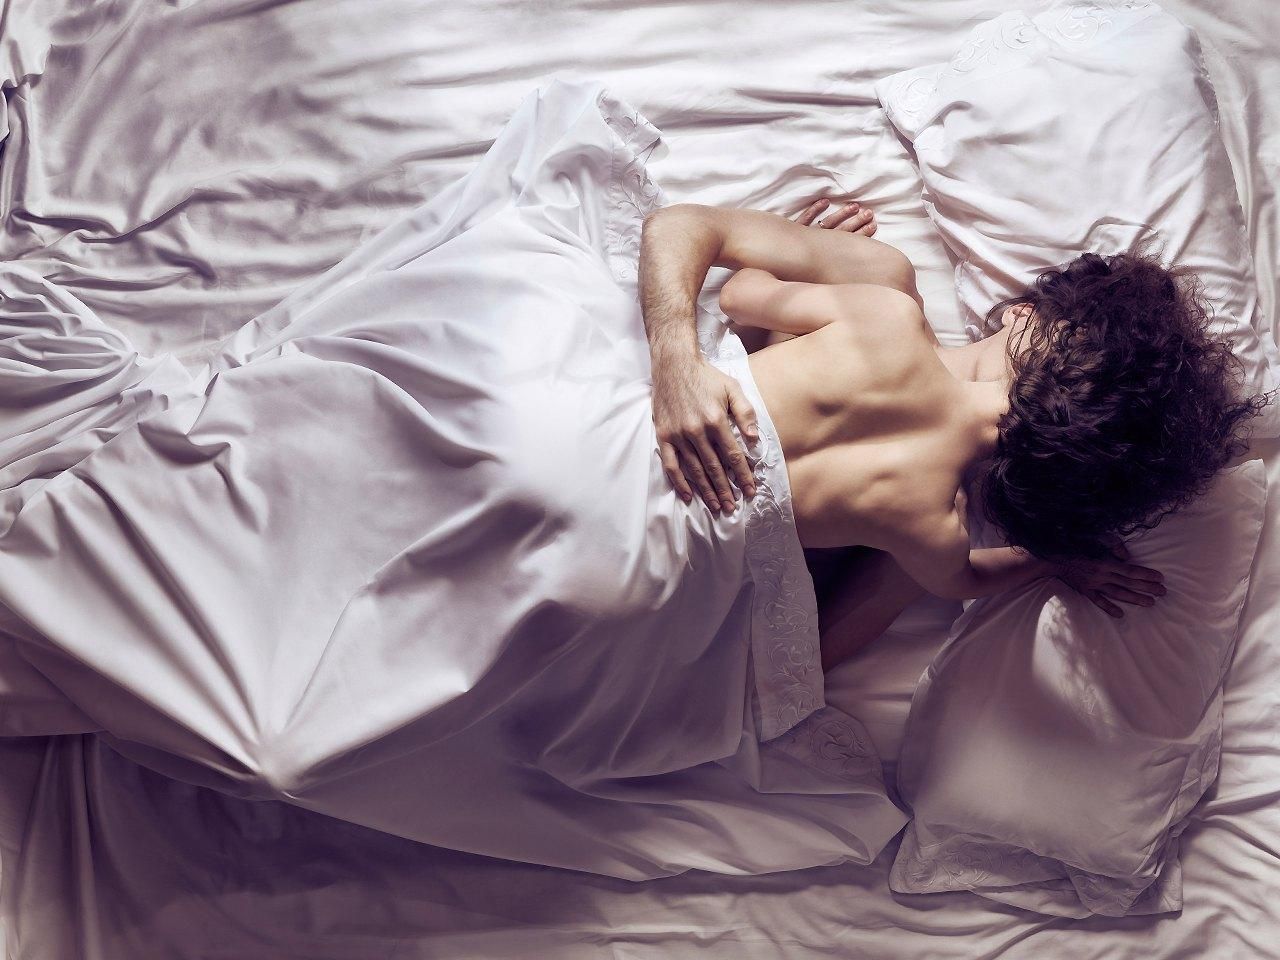 Чувственный секс: 5 правил, которые подарят максимум удовольствия